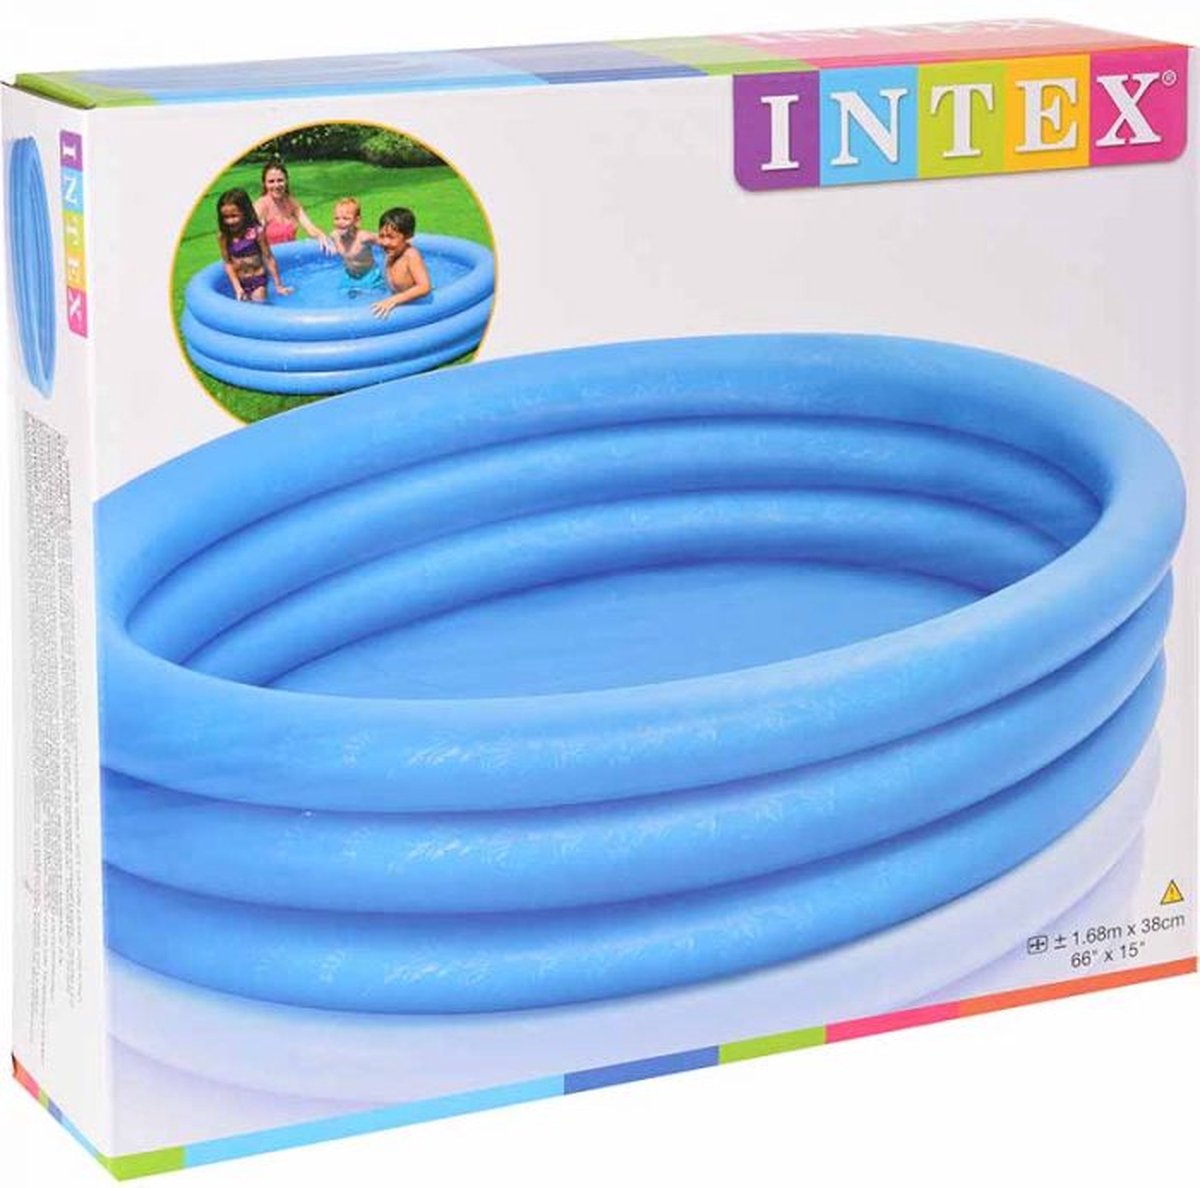 Oneiro's Luxe Intex Zwembad 3 rings - 168cm - zomer - tuin - spelen - speelgoud - buitenspeelgoed - zwembad - zwemmen - zomer - intex - tuinaccessoires - koelen - opblaasbaar